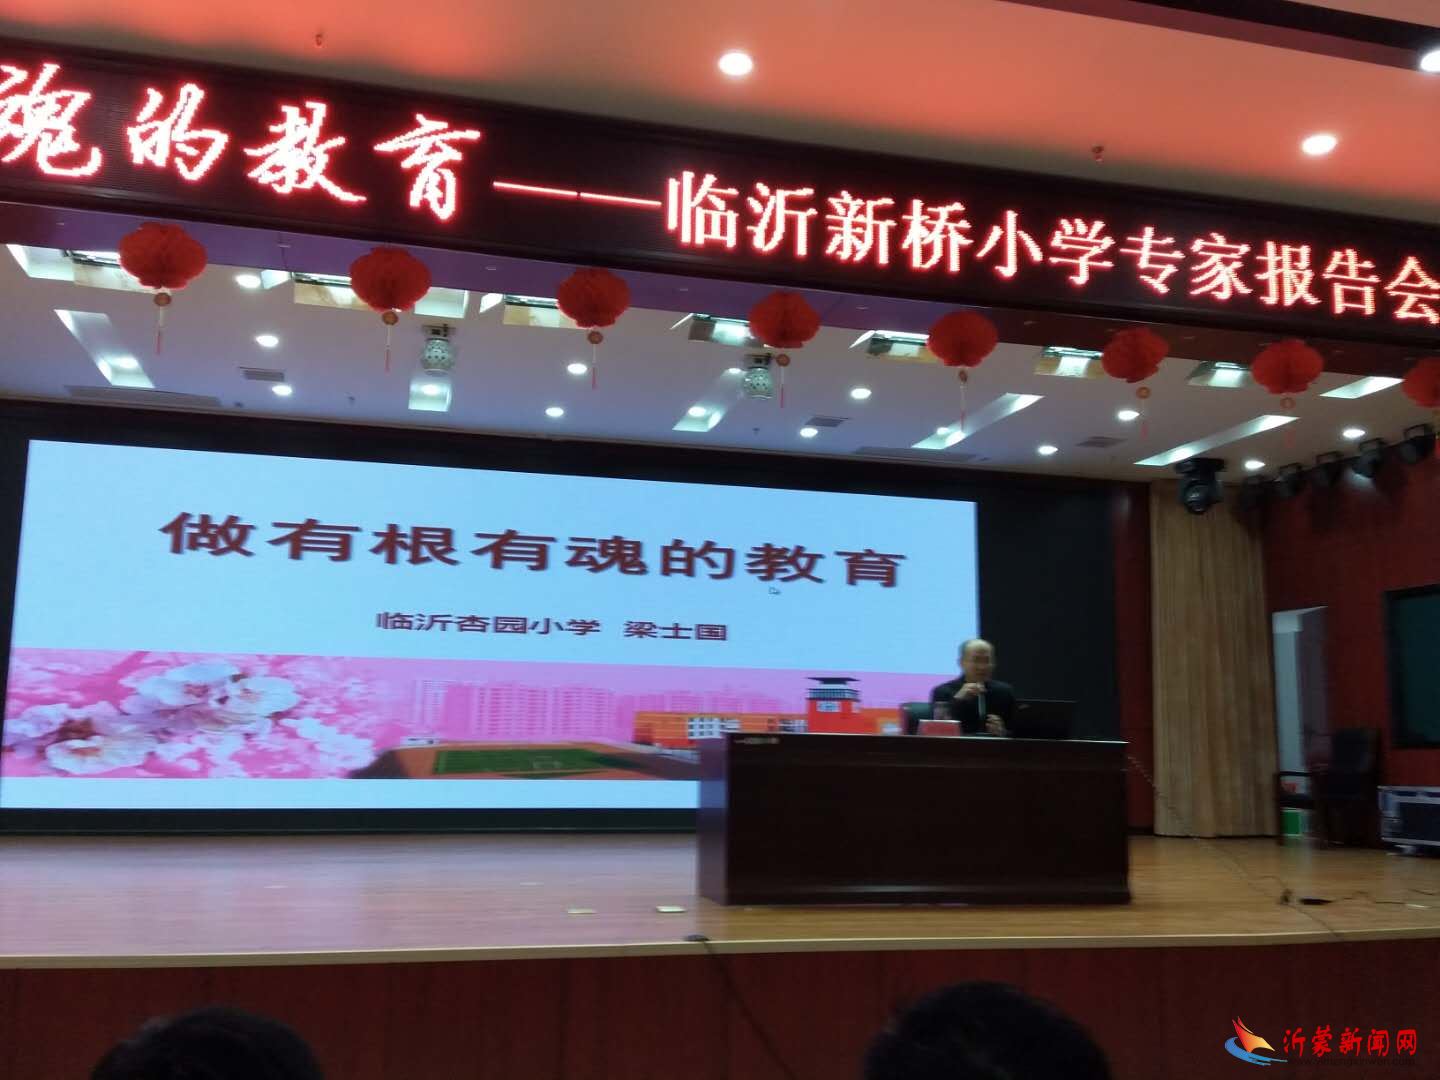 临沂市新桥小学举行2019年寒假集中学习专家报告会